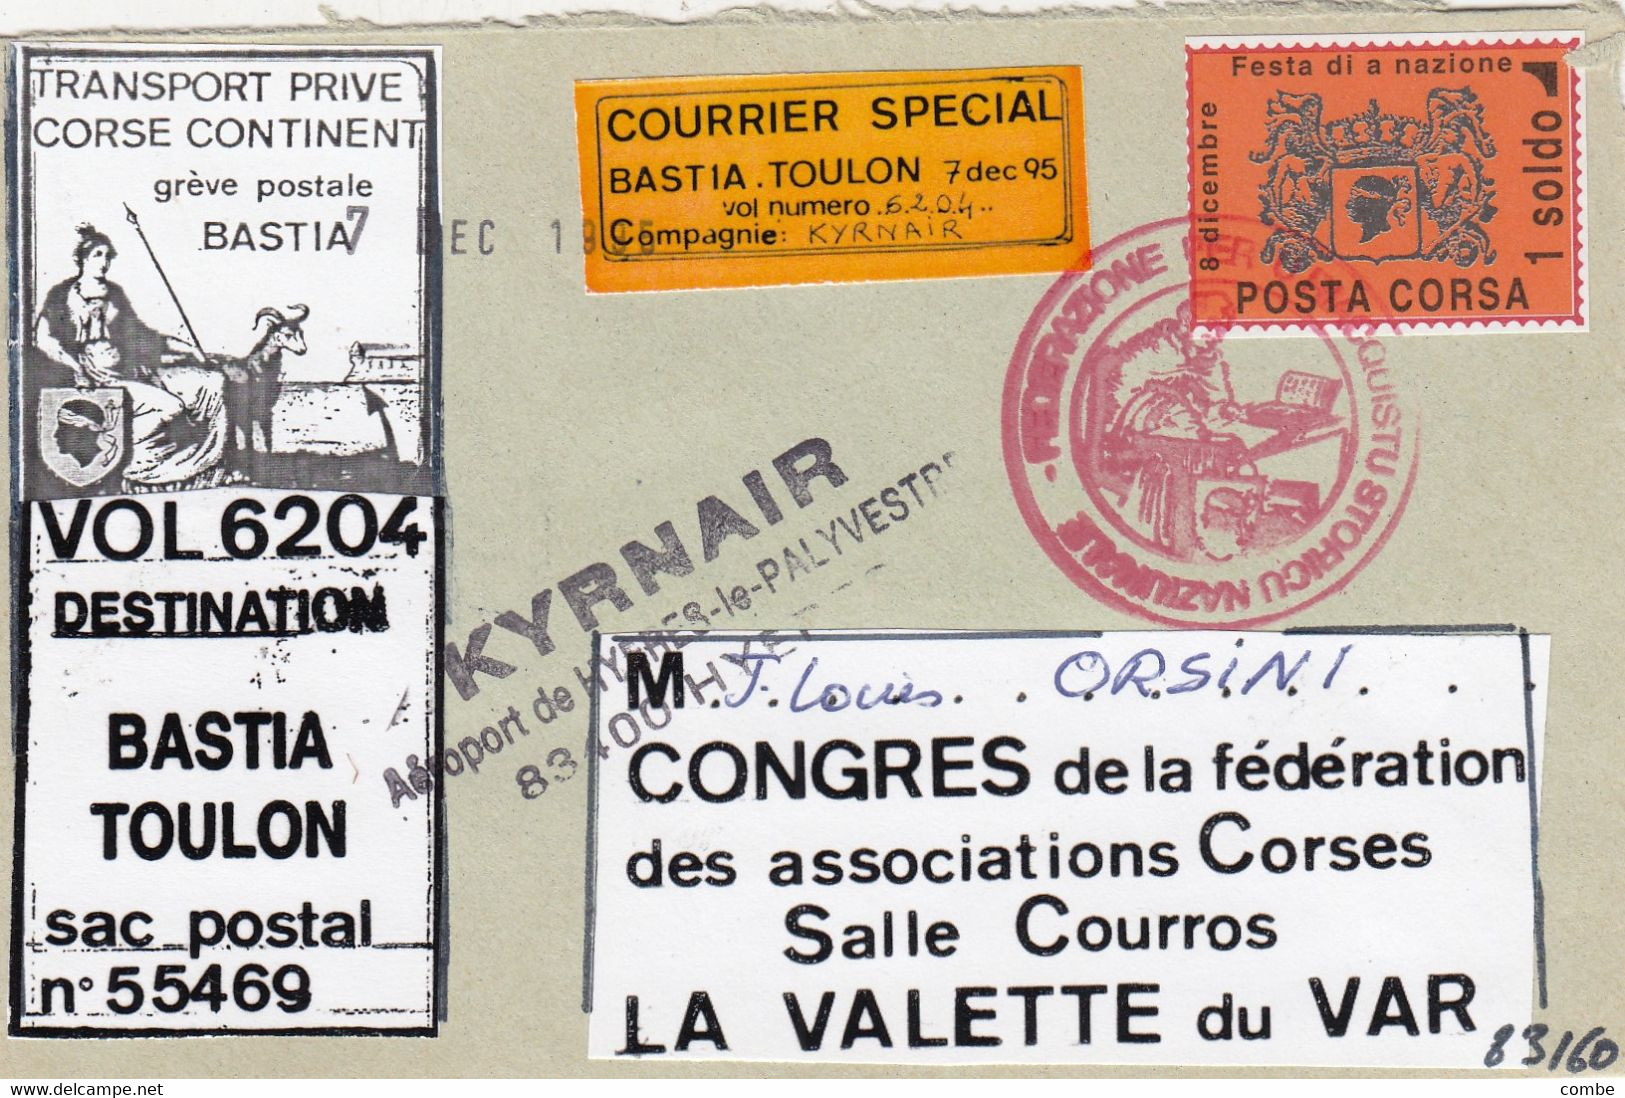 LETTRE. GREVE BASTIA 1995. 2 VIGNETTES COURRIER SPECIAL  + 1 SOLDO. AEROPORT DE HYERES. VOL 6204. N° 18 (AVEC FORTIN) - Documents